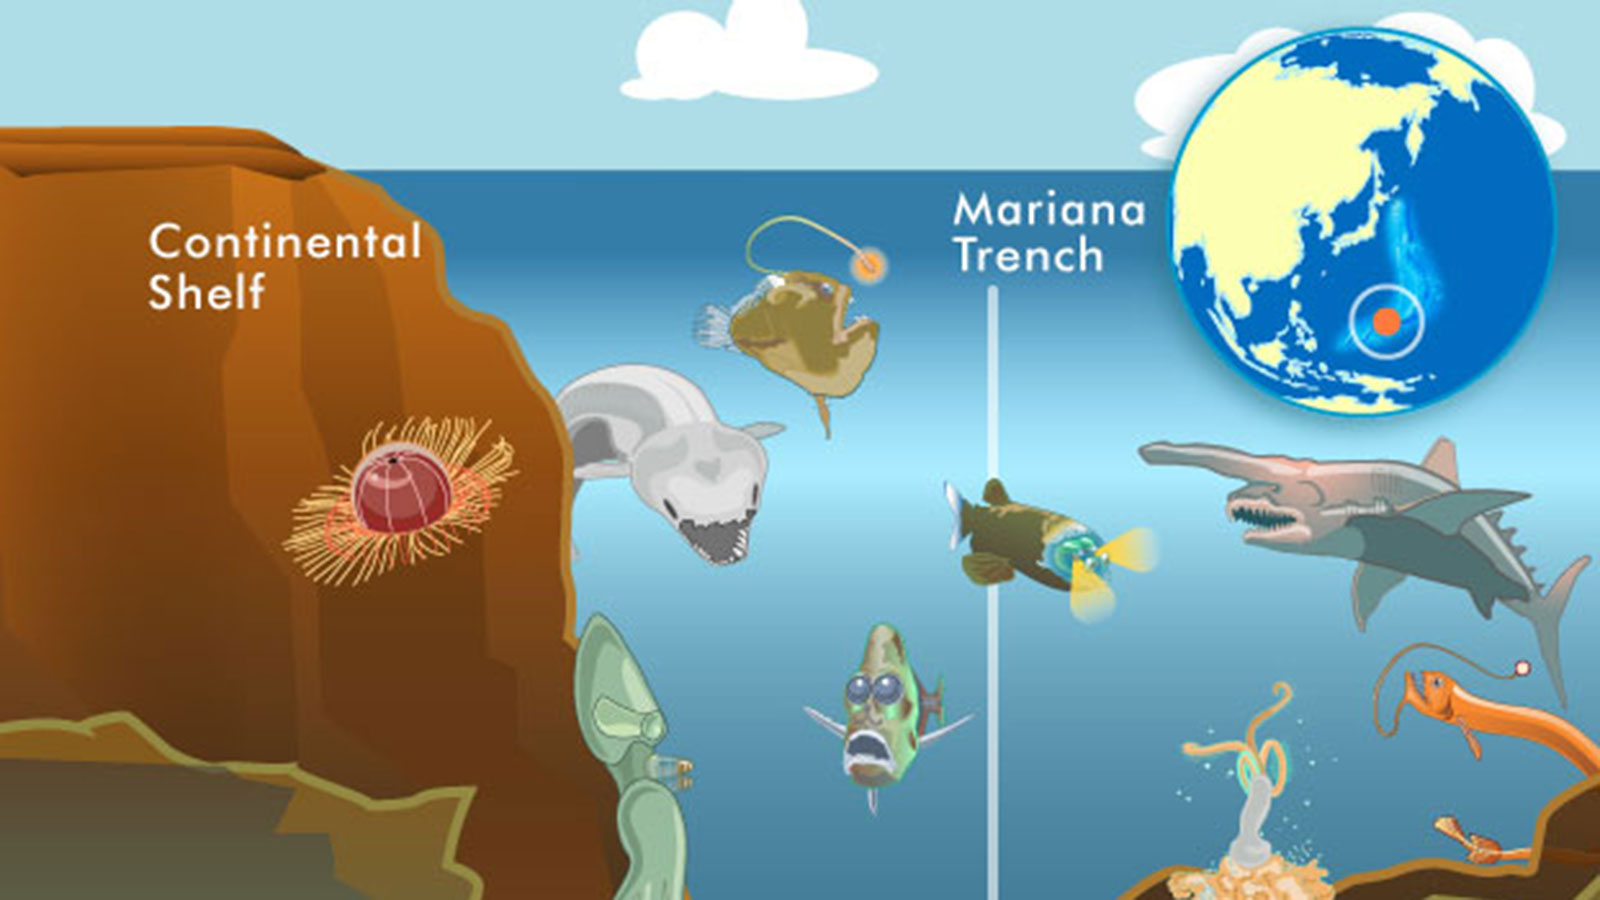 Bí ẩn về hiện tượng rãnh Mariana nuốt chửng 3 tỷ tấn nước biển mỗi năm - Ảnh 3.